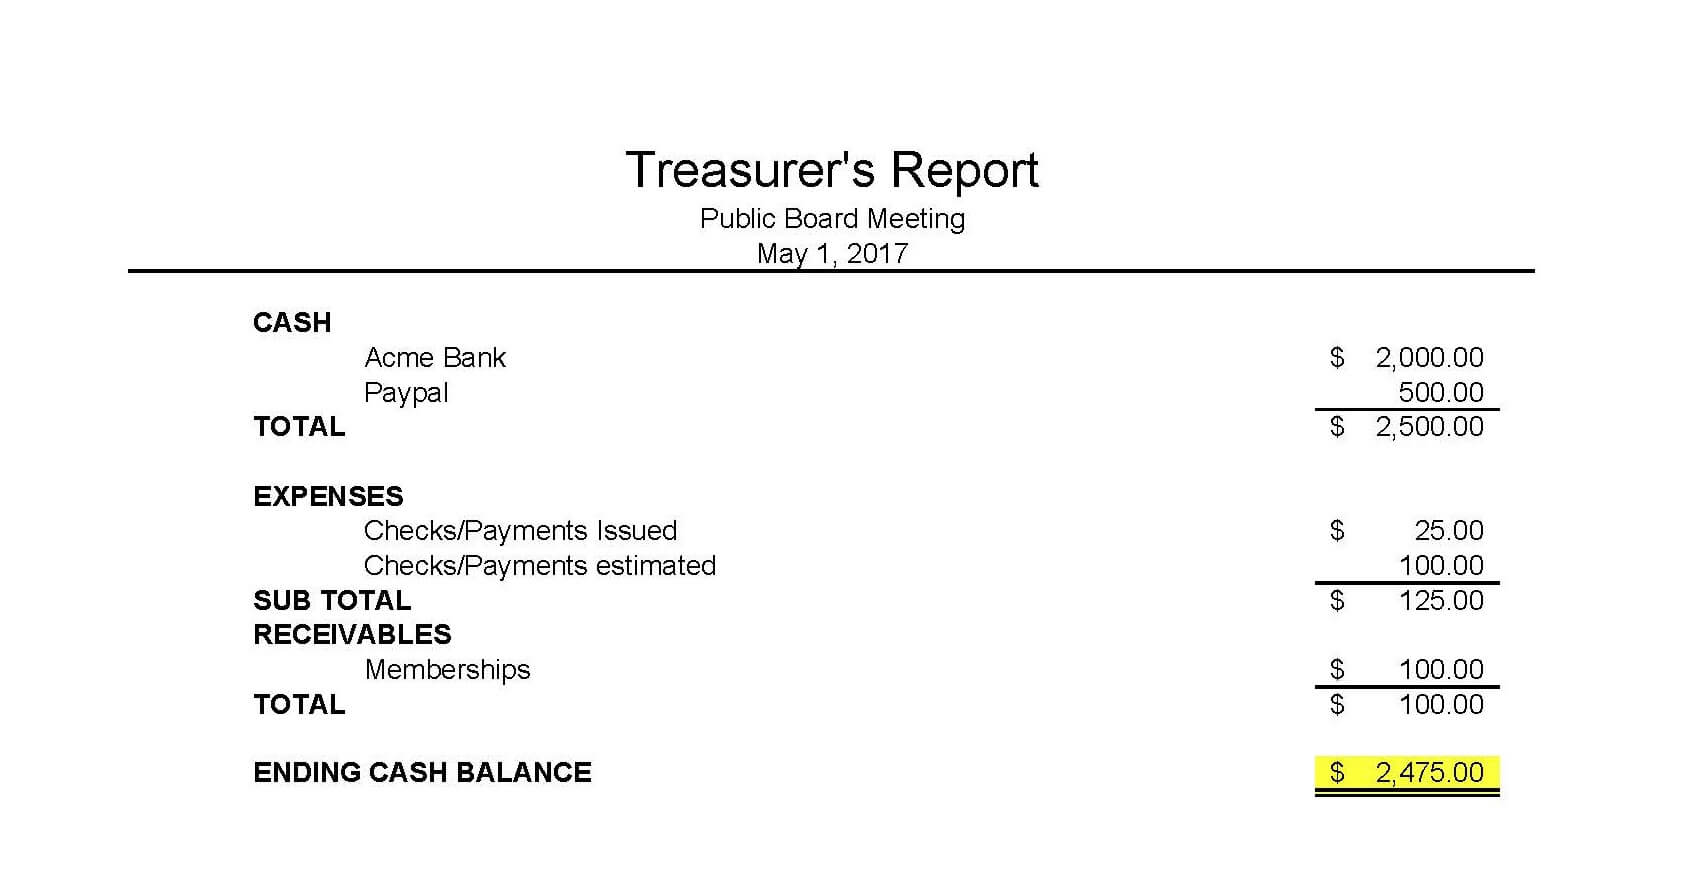 Treasurer Report Template Google Docs Regarding Treasurer's Report Agm Template